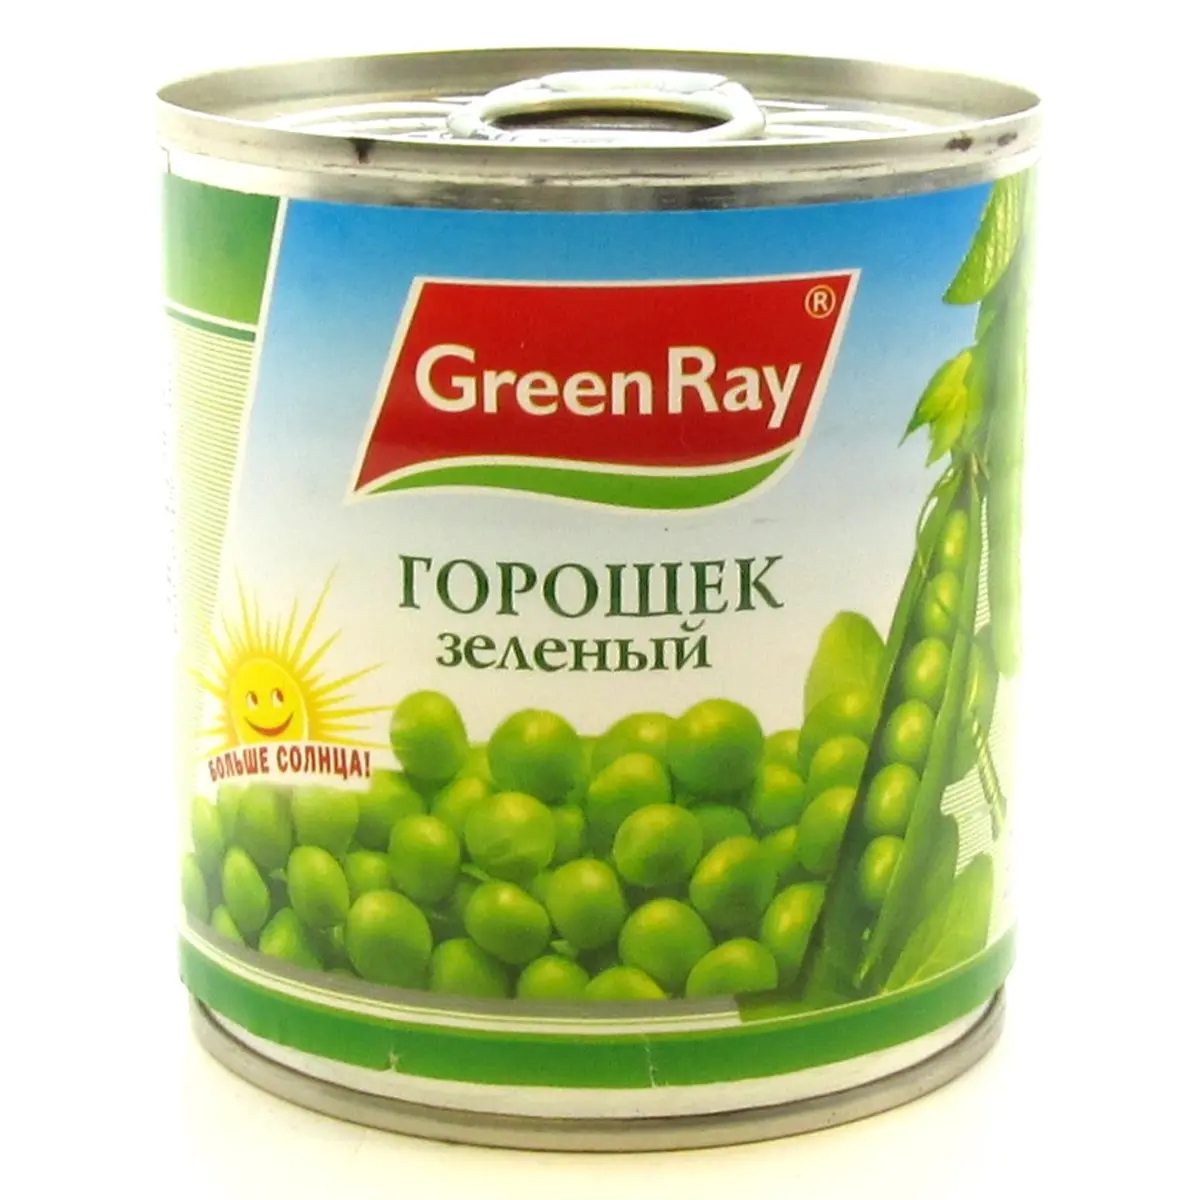 Горошек зеленый Грин Рей 425г. Горошек зеленый Green ray 425мл ж/б. Зеленый горошек без сахара